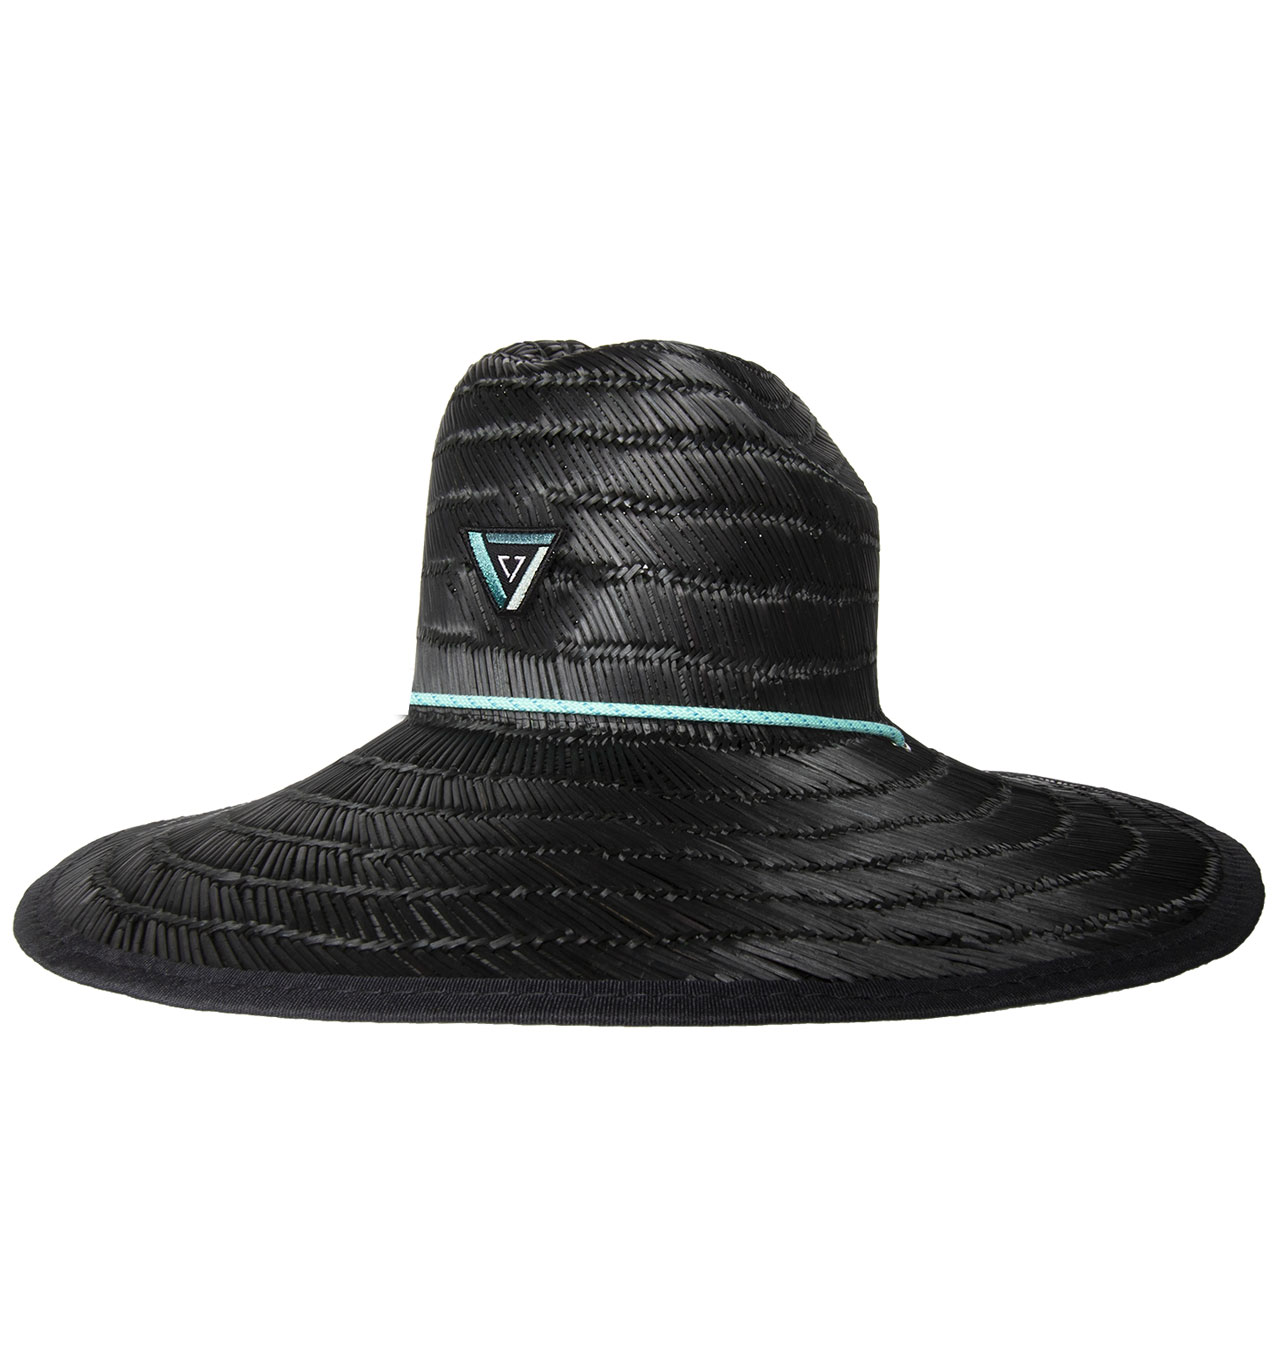 Vissla---Outside-Sets-Lifeguard-Hat---Black